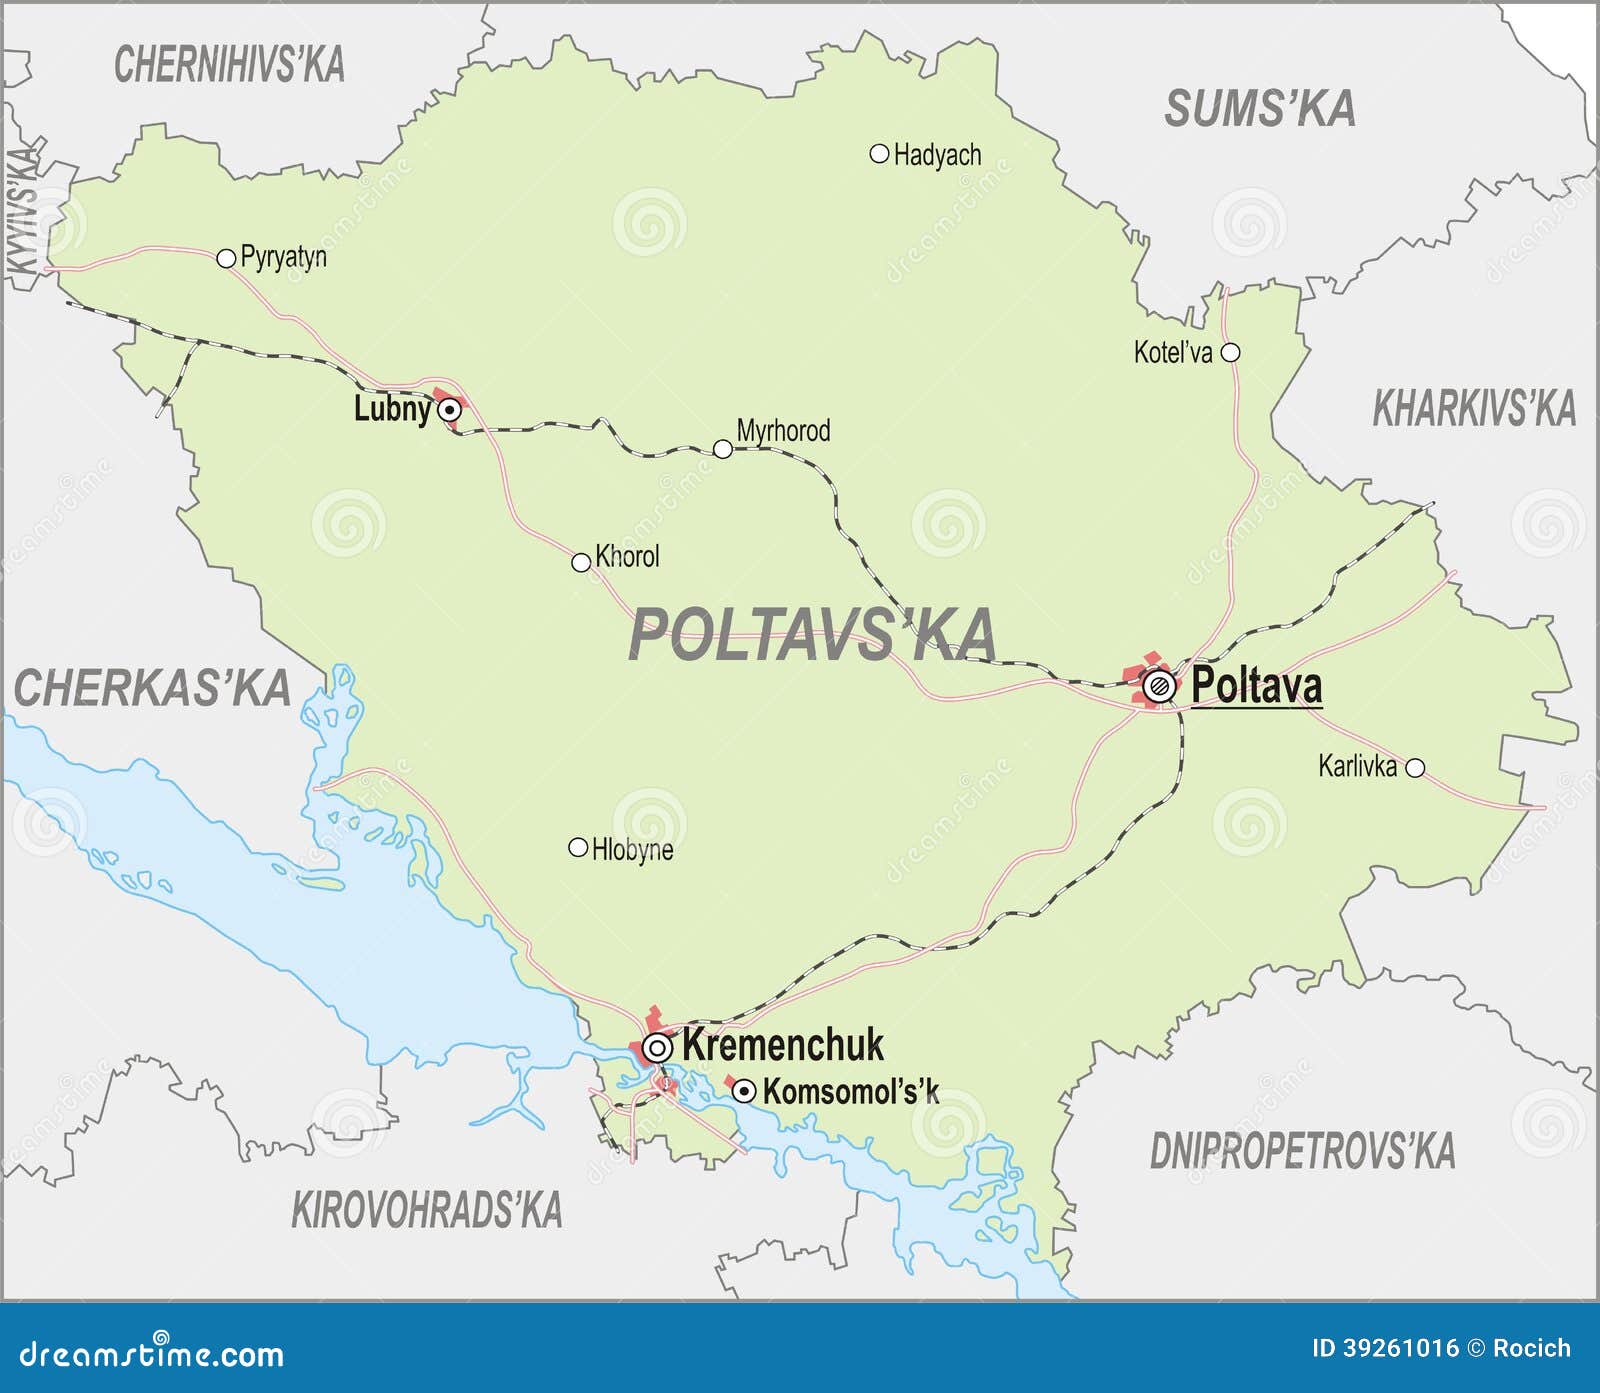 Где находится полтава на карте украины. Полтава на карте. Город Полтава на карте. Полтава на карте России. Полтава где находится на карте.